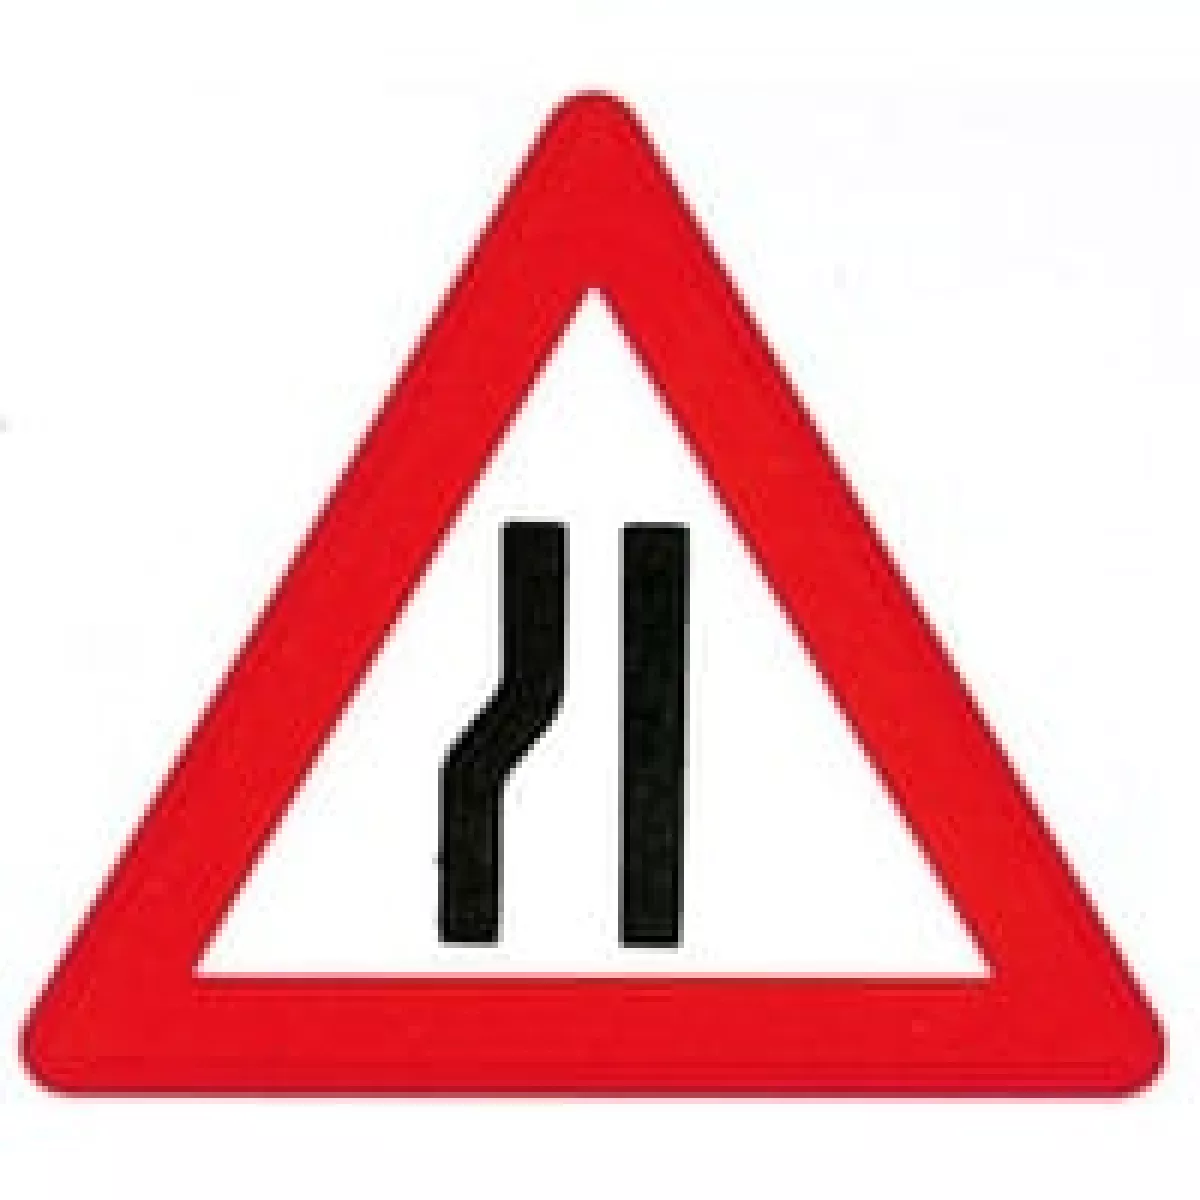 #2 - Vejskilt - Advarselstavle A43.2 Indsn?vret vej i venstre side